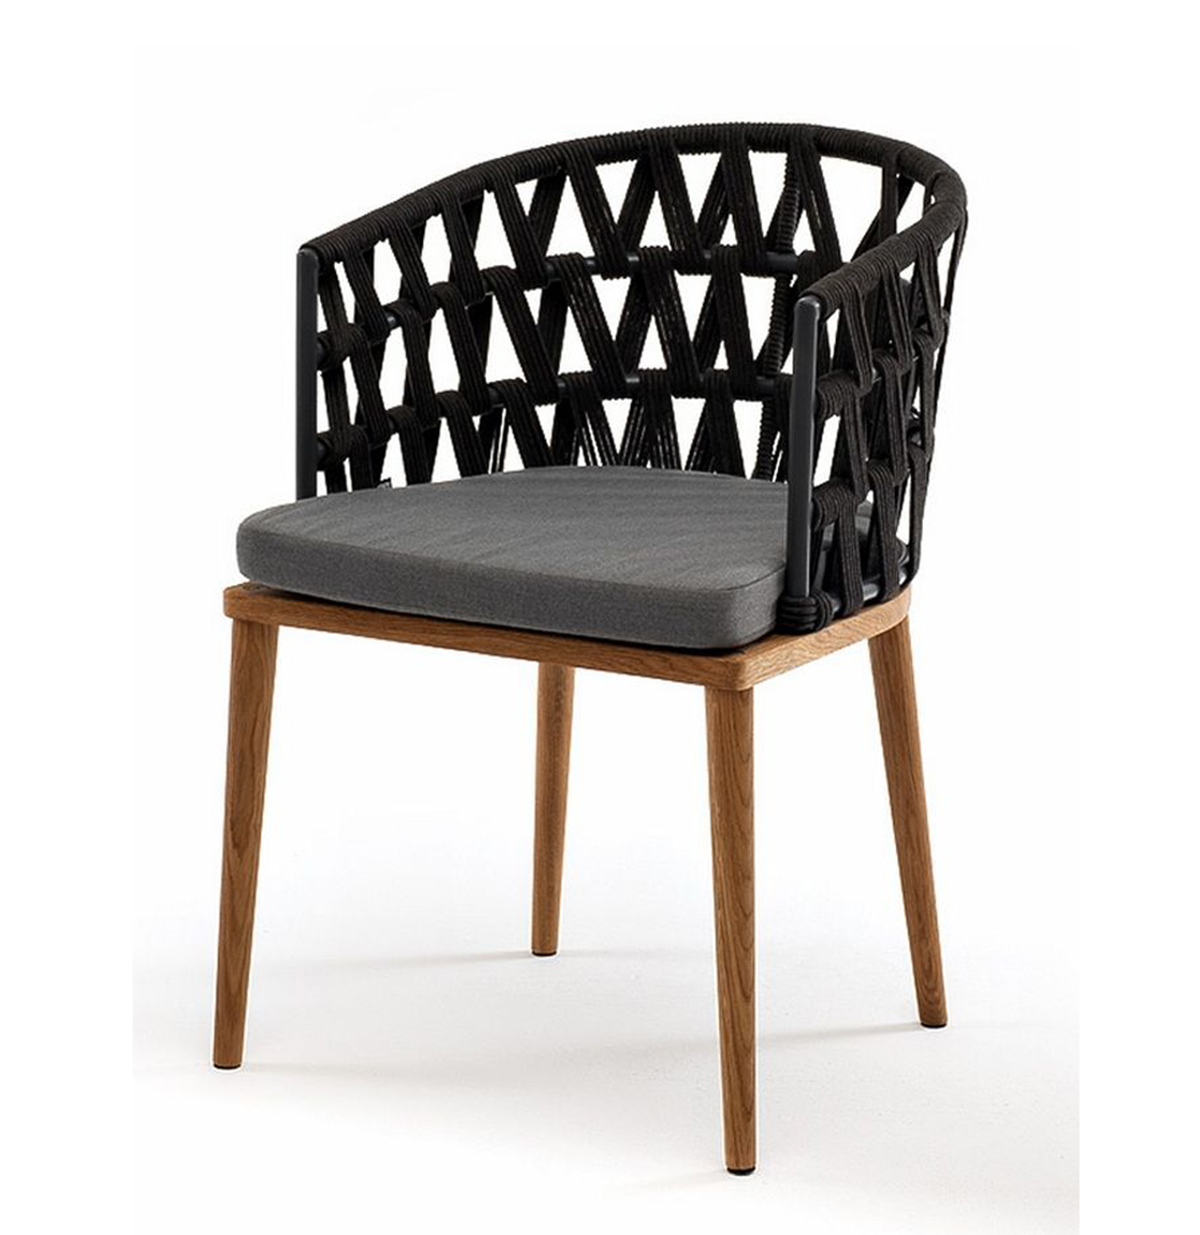 Плетеный стул Диего из дуба, темно-серый кресло плетеное из роупа канны темно серый ткань savana grafit